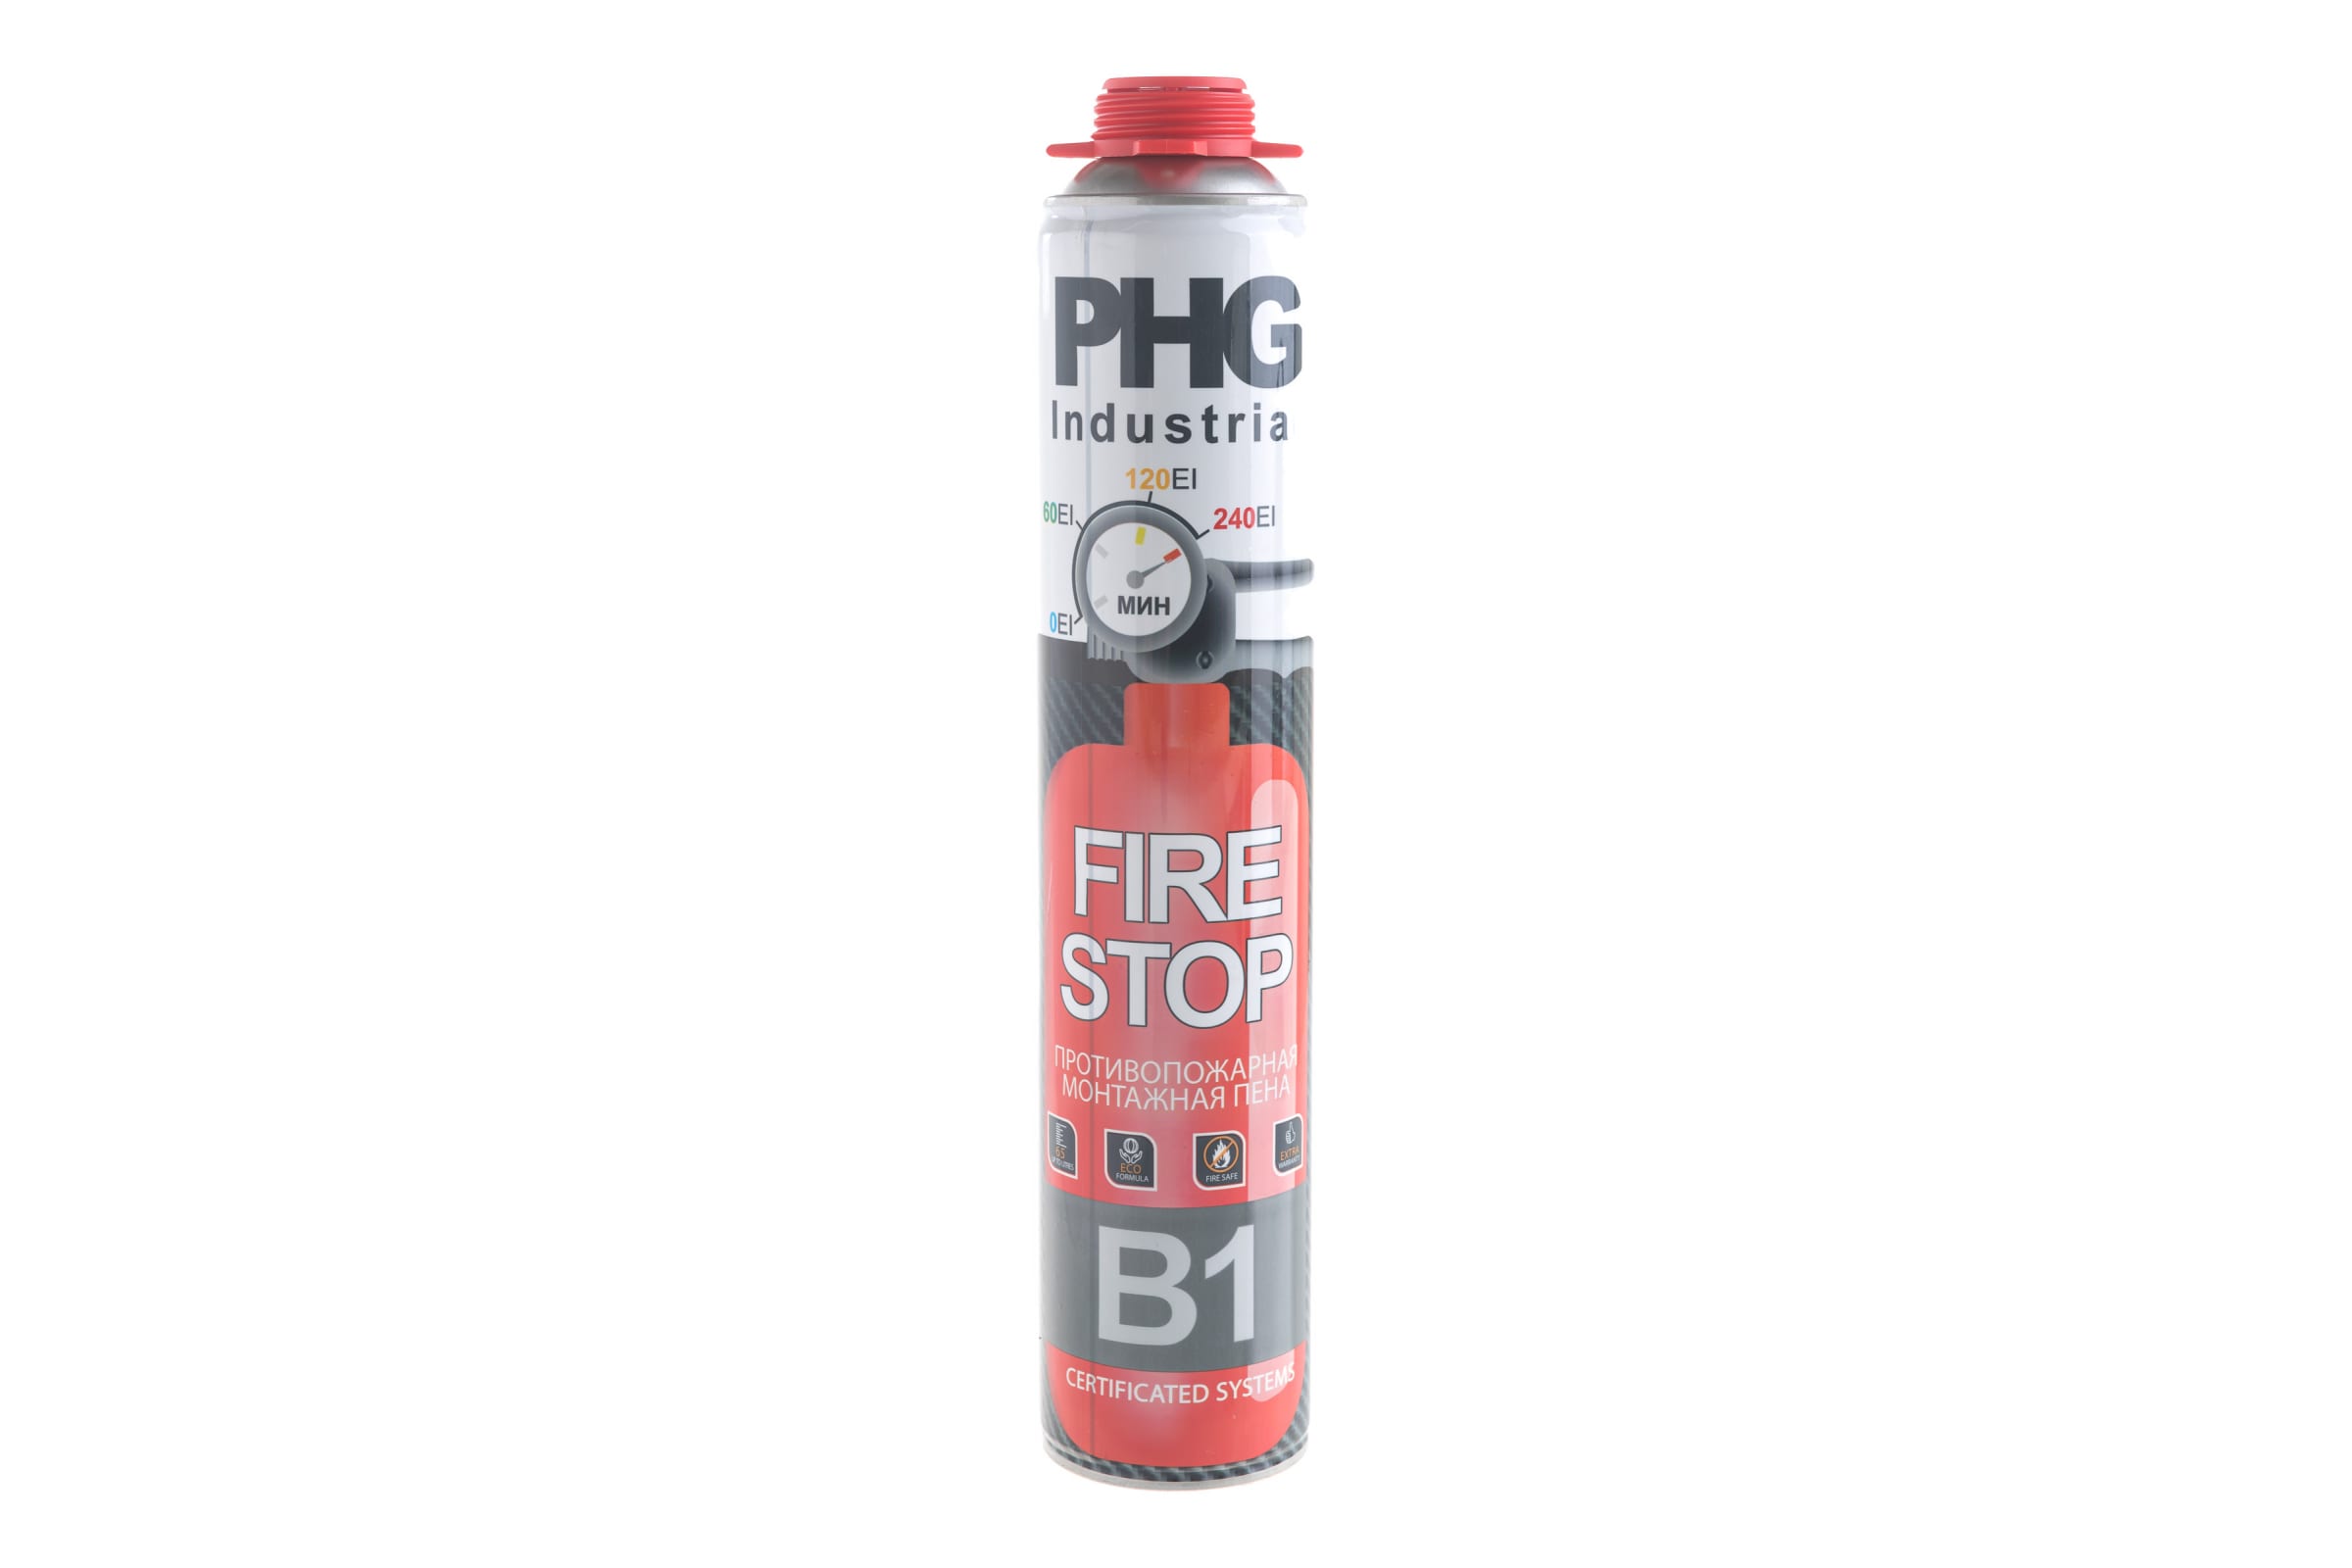 PHG Industrial FireStop B1 огнестойкая монтажная пена 1000 ml 612288